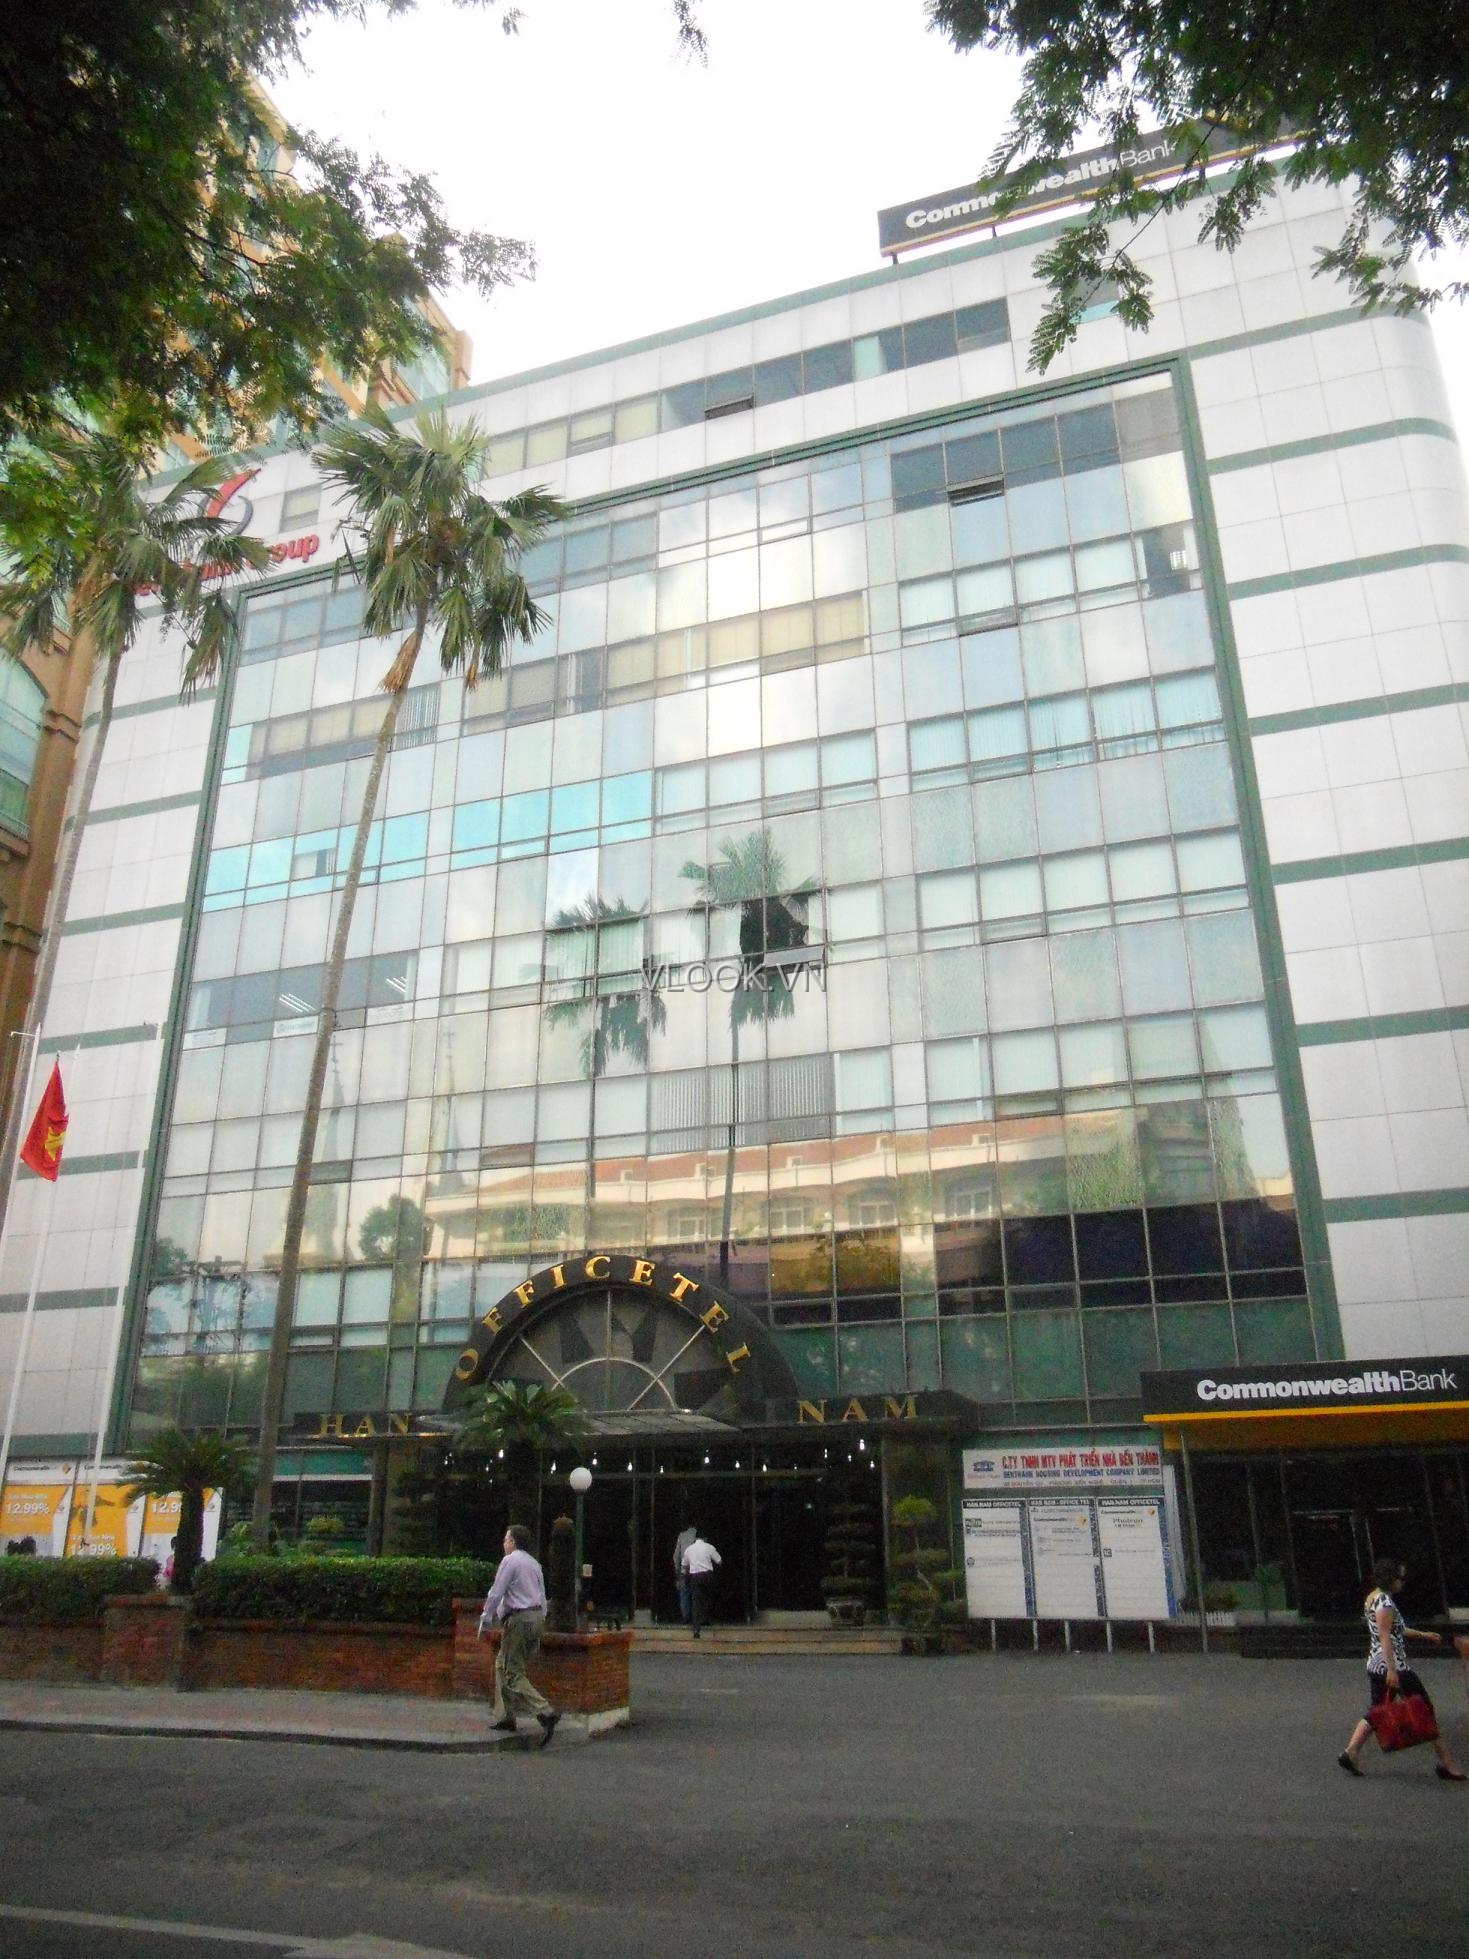 VLOOK.VN - Văn phòng cho thuê Quận 1 - Han Nam Building